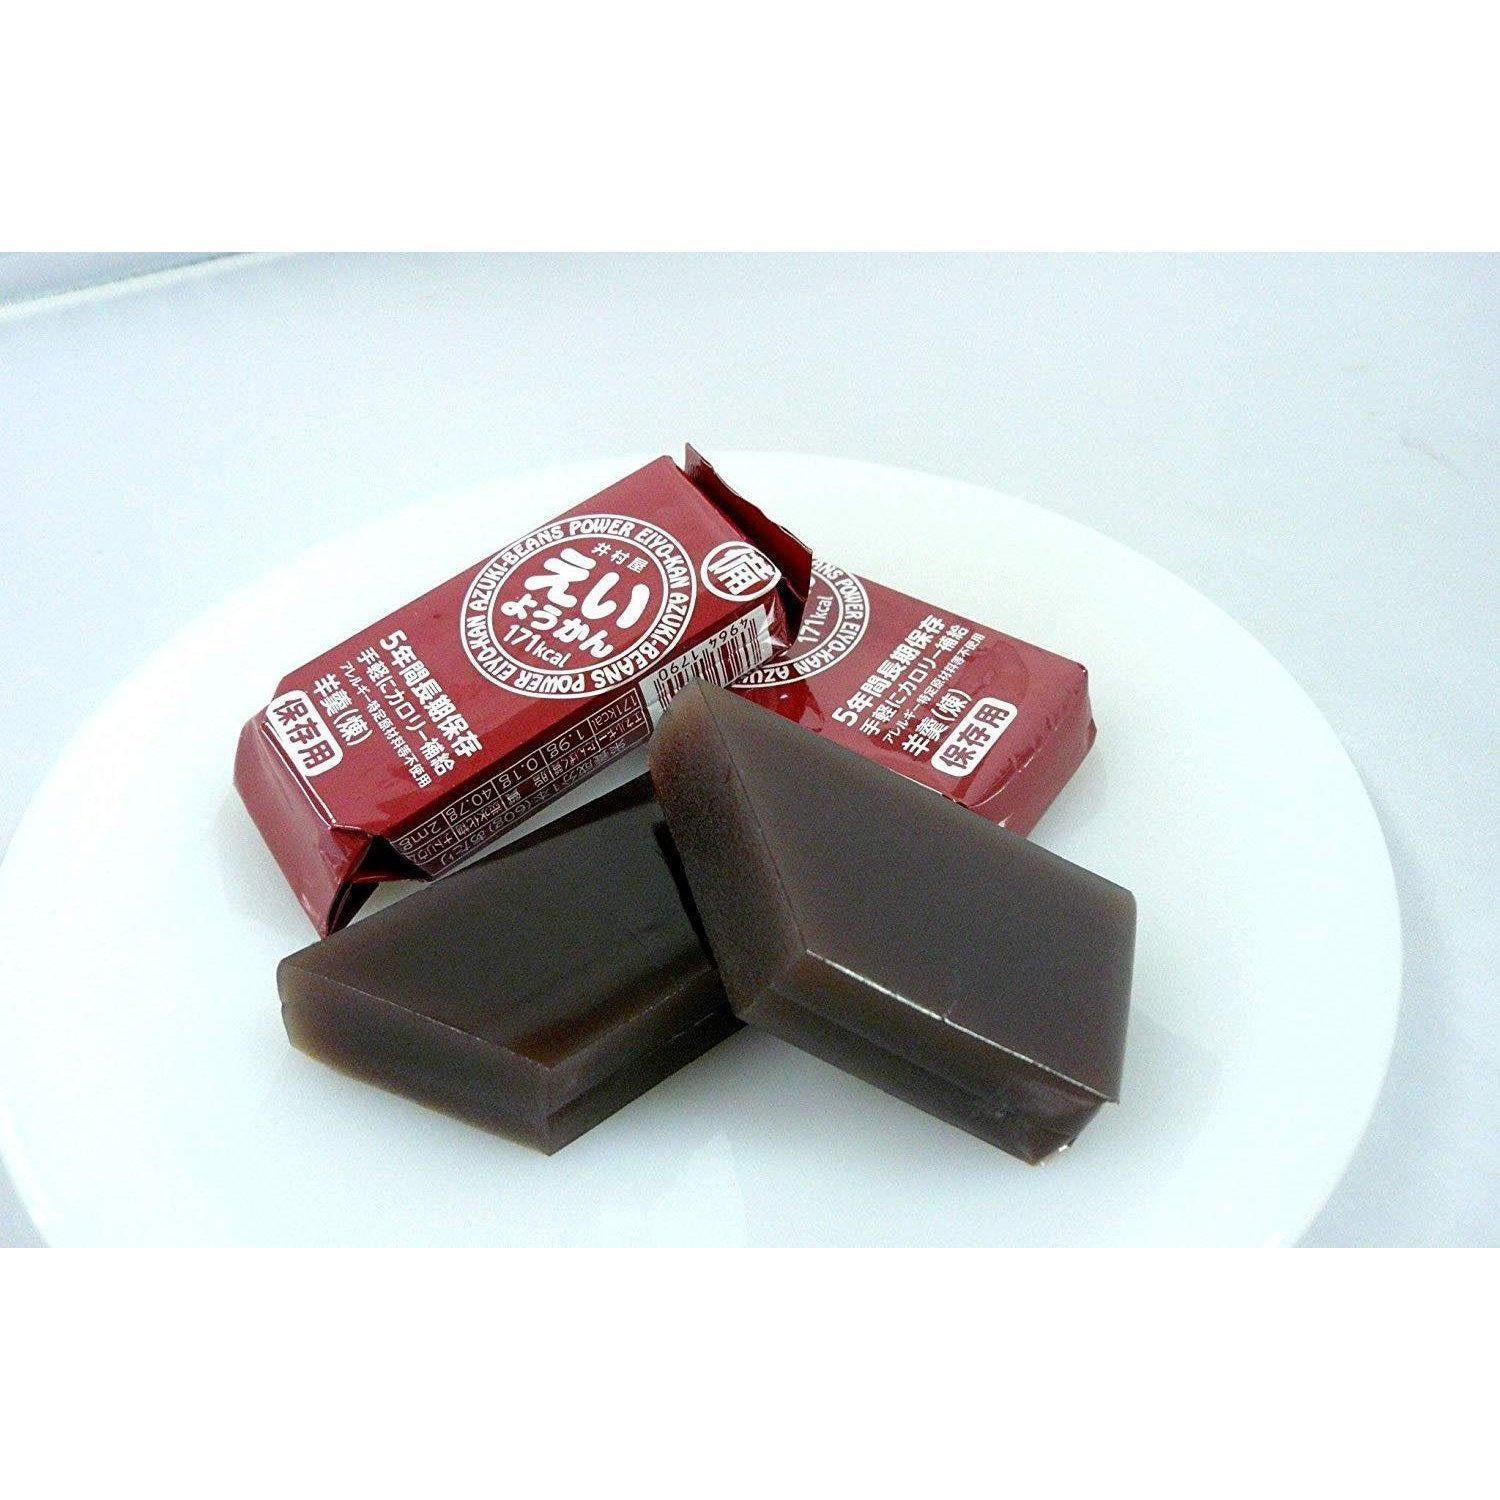 Imuraya Eiyokan Jellied Azuki Red Bean Paste Blocks 5 Bars